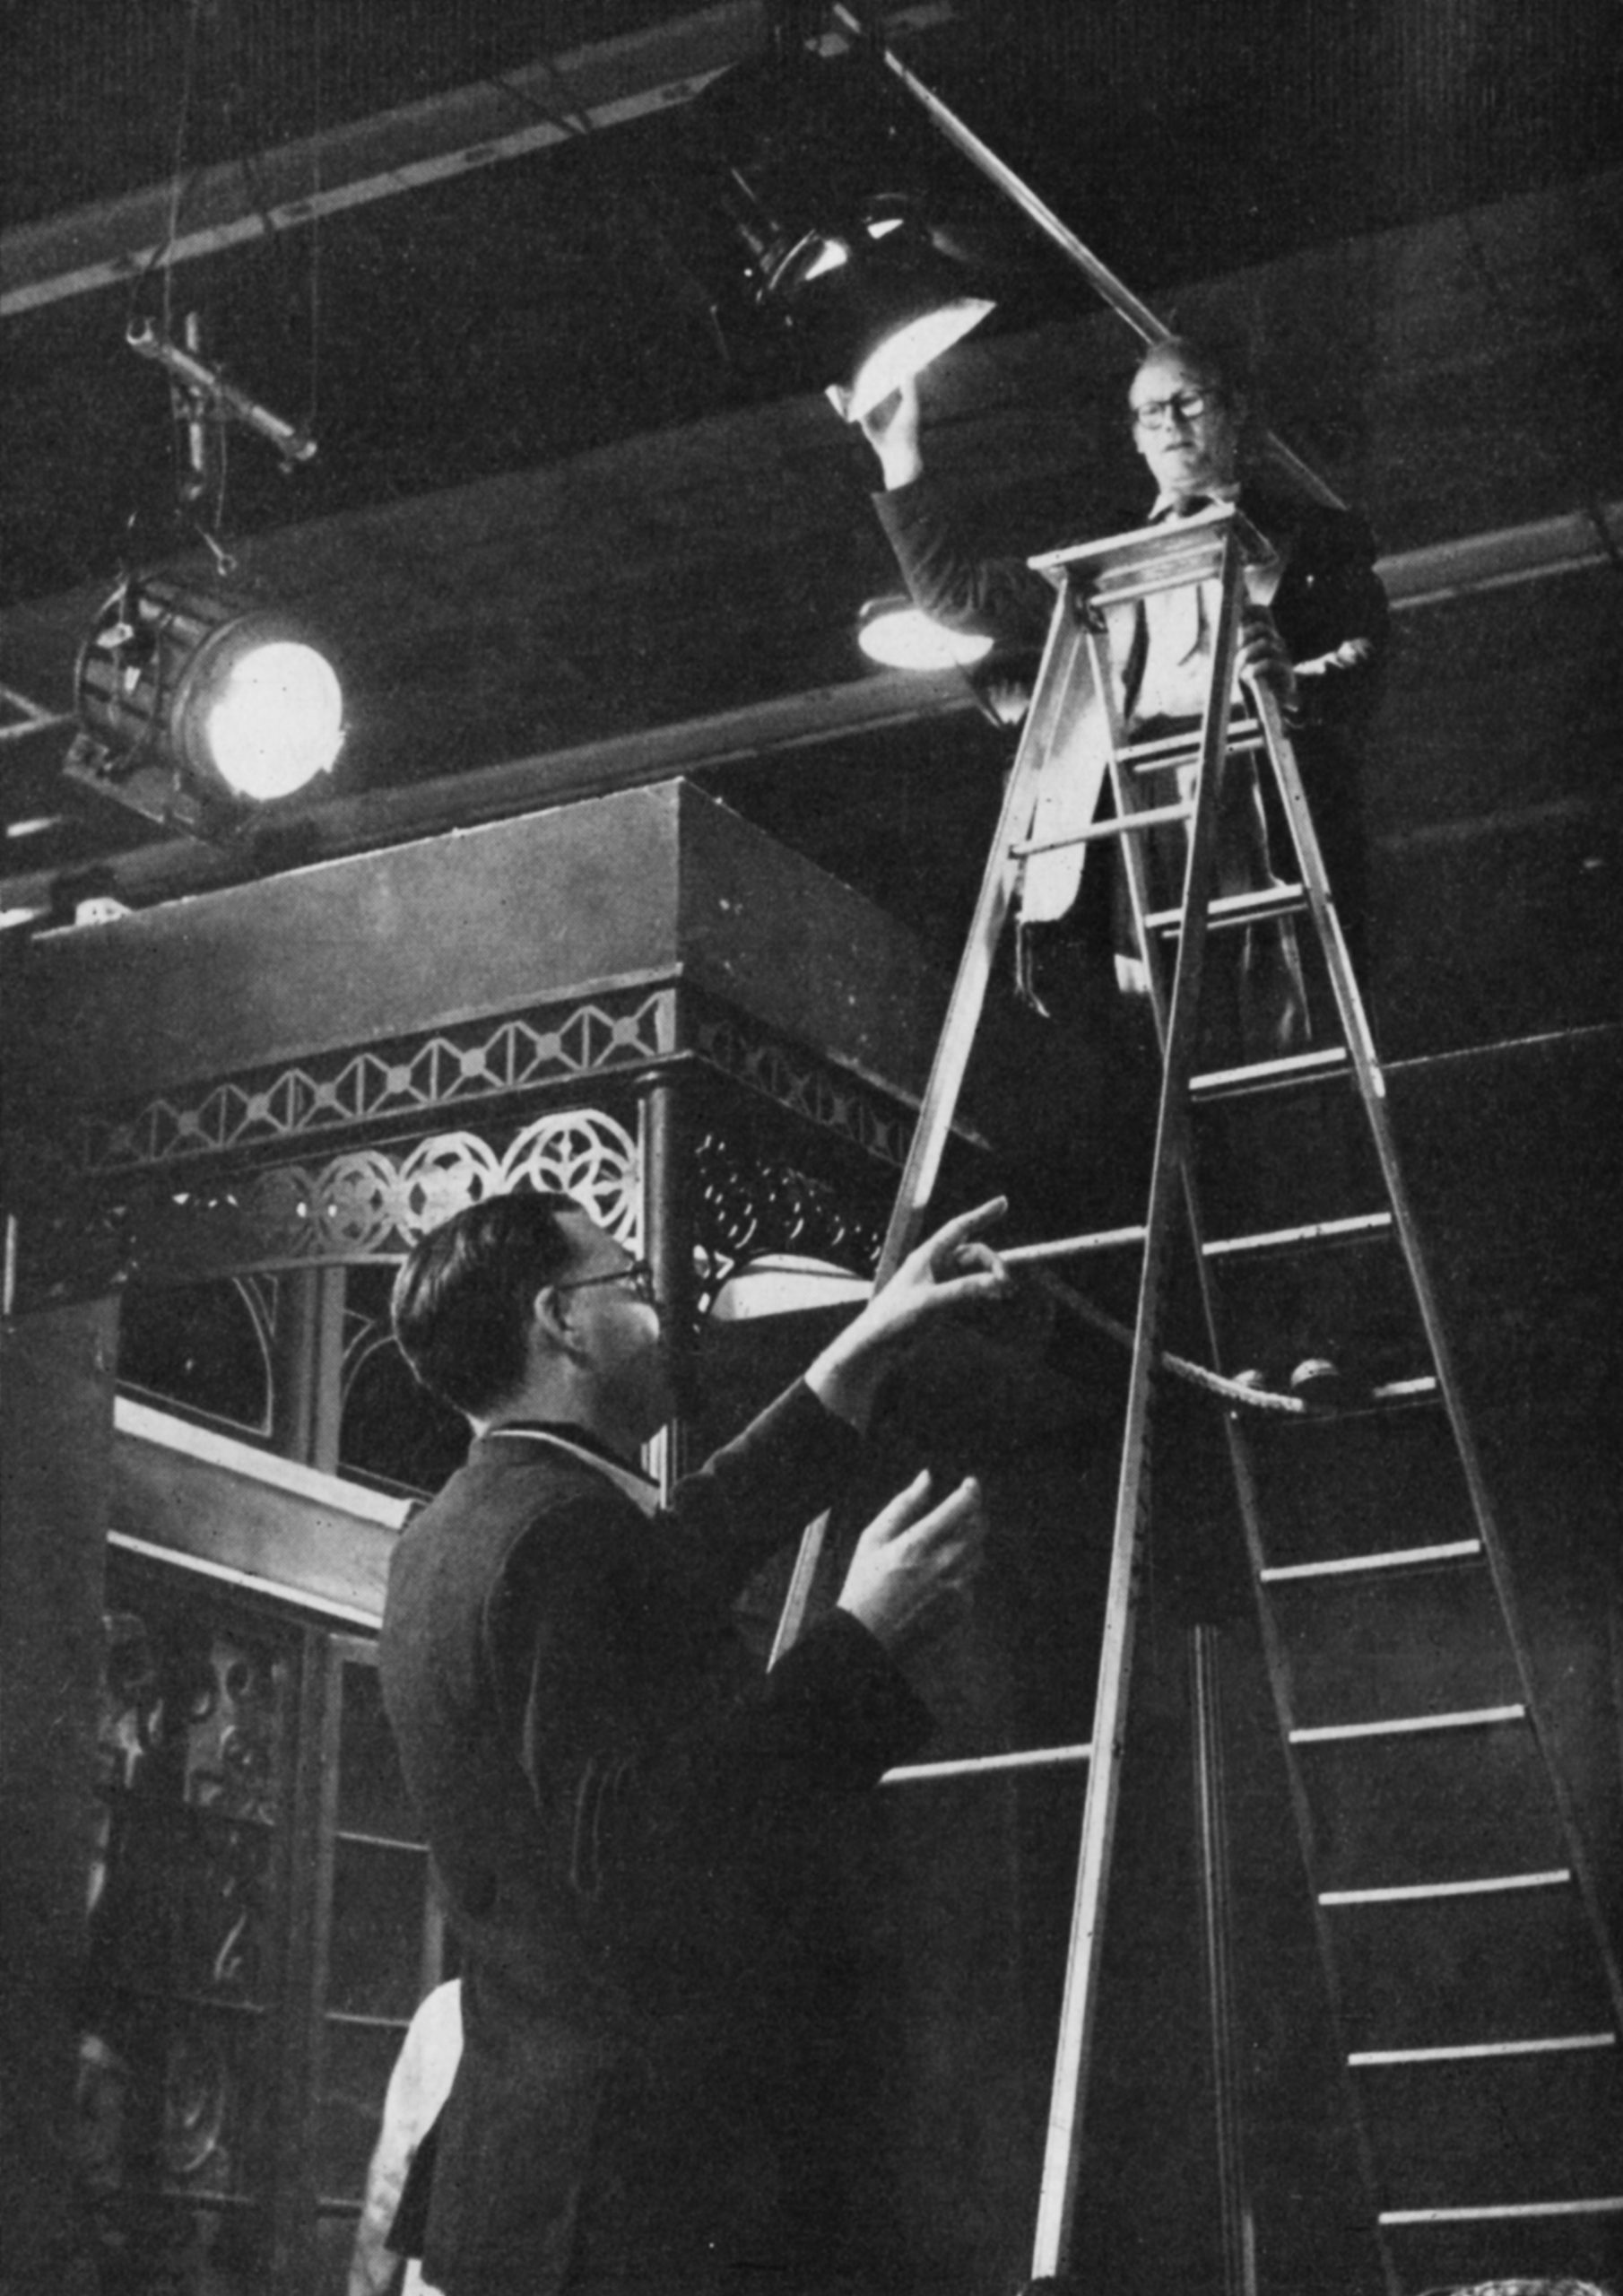 A man climbs a ladder to adjust a studio light.